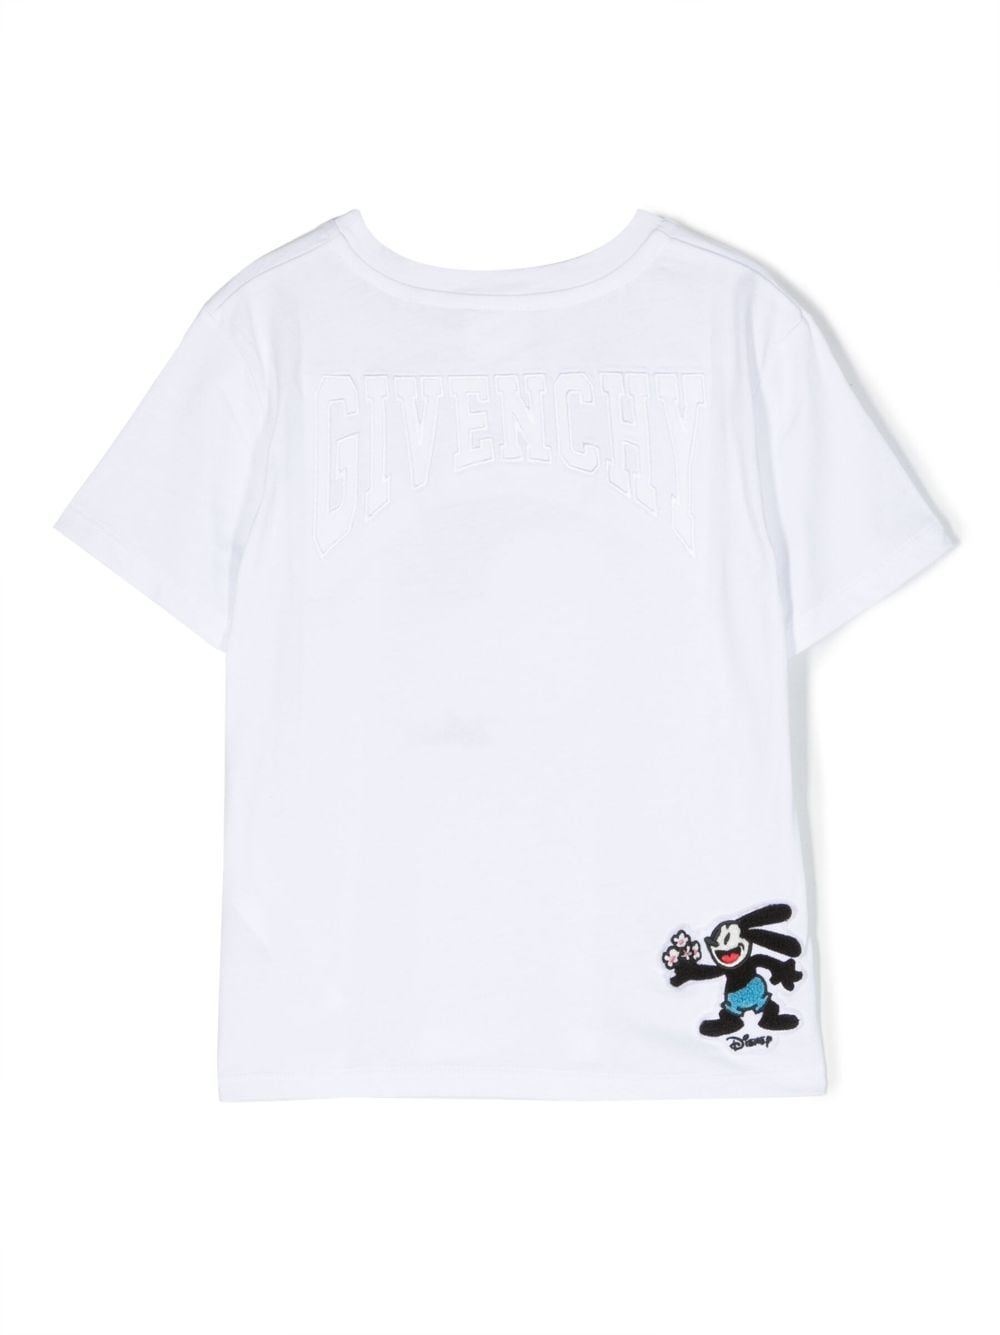 T-shirt fille blanc avec imprimé